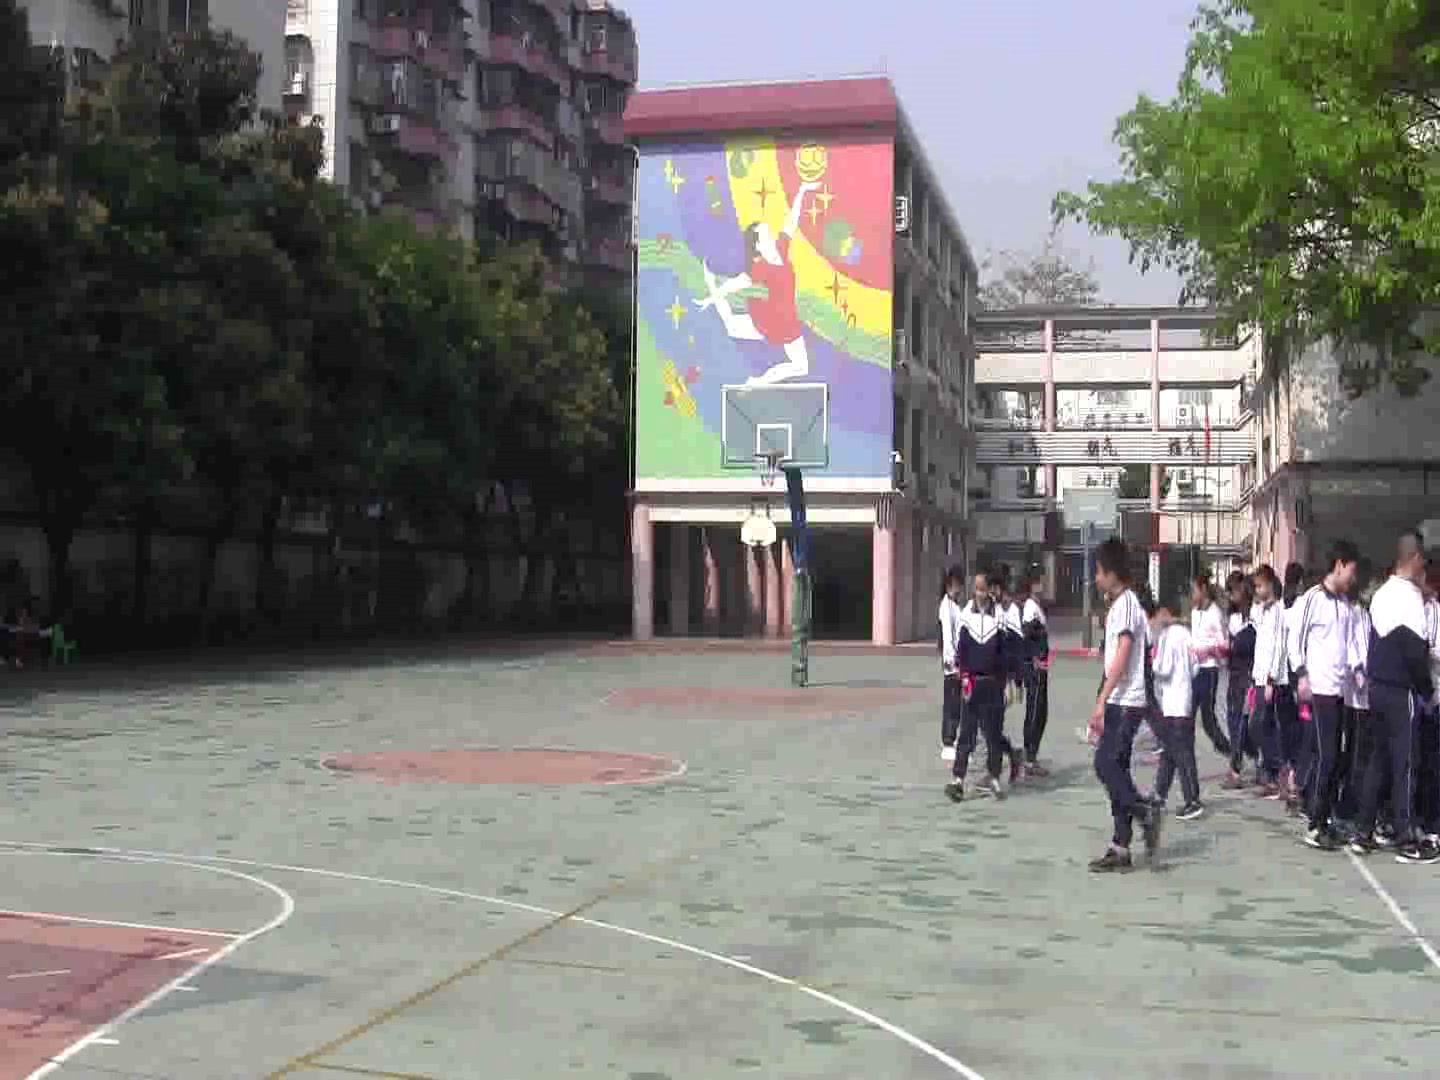 2.人教2011版体育与健康一至二年级《3.踢毽子》广东省市一等奖